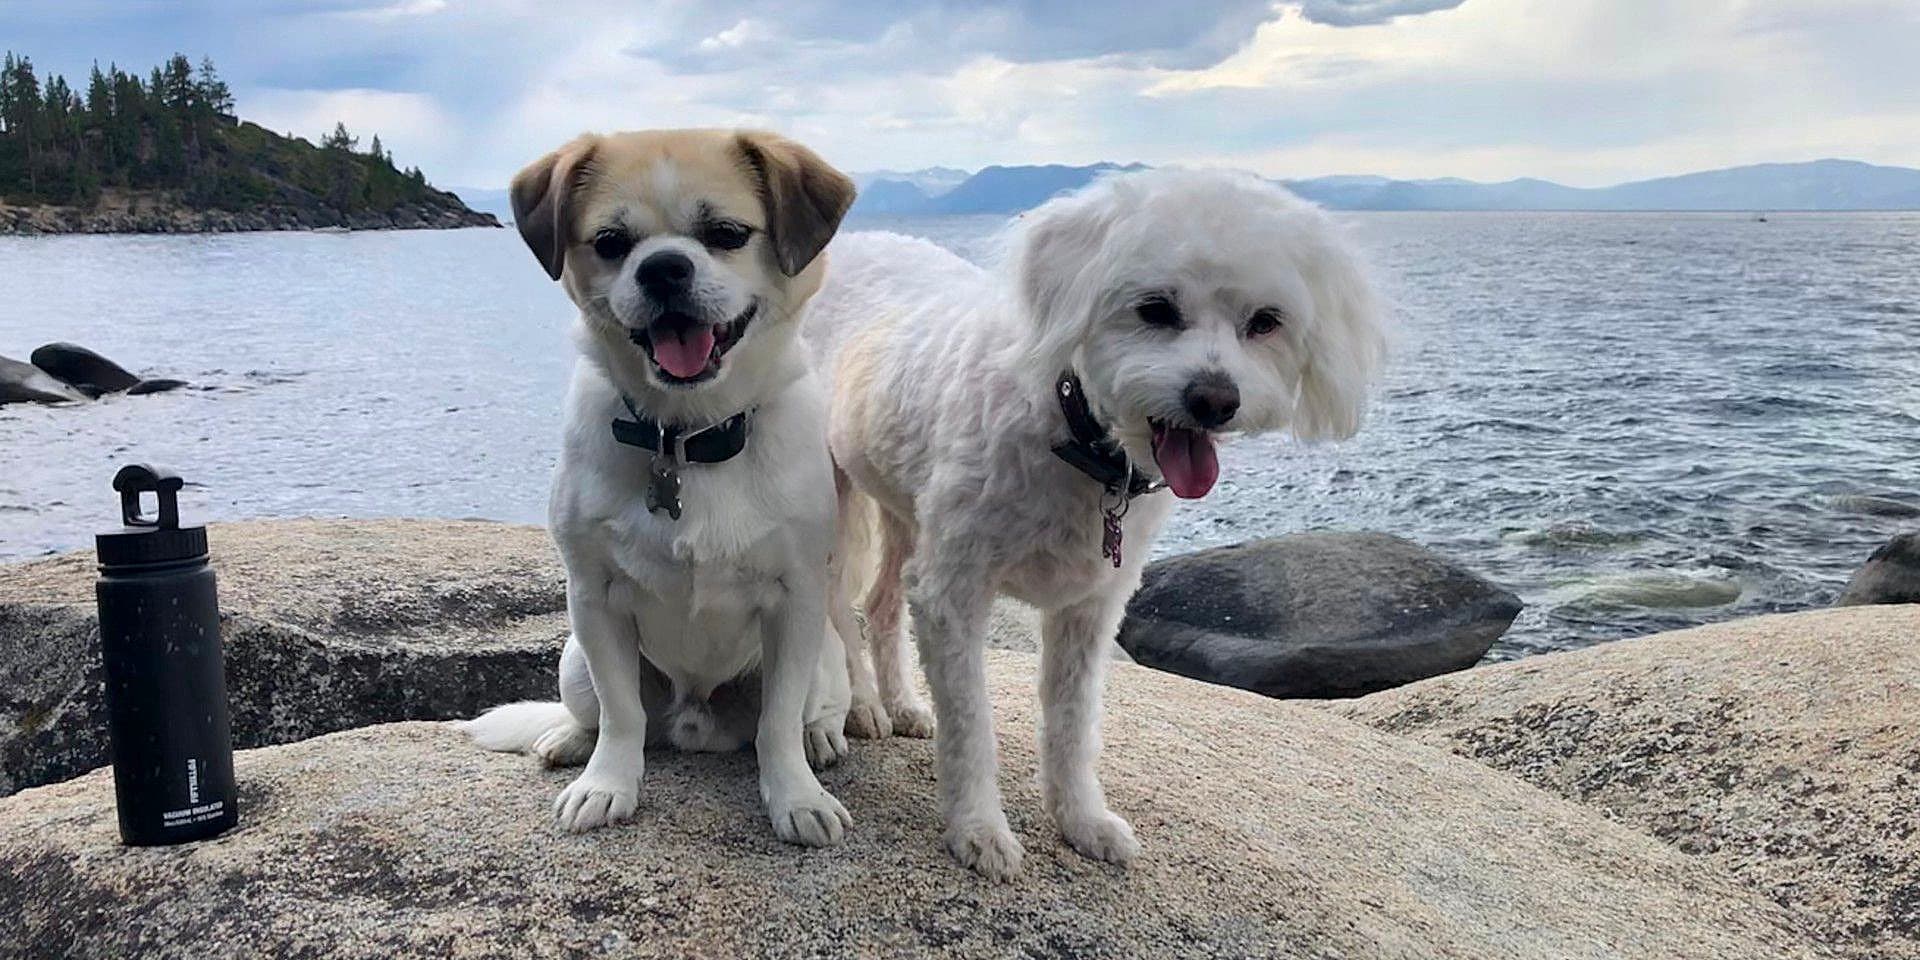 Dogs on Lake Shasta